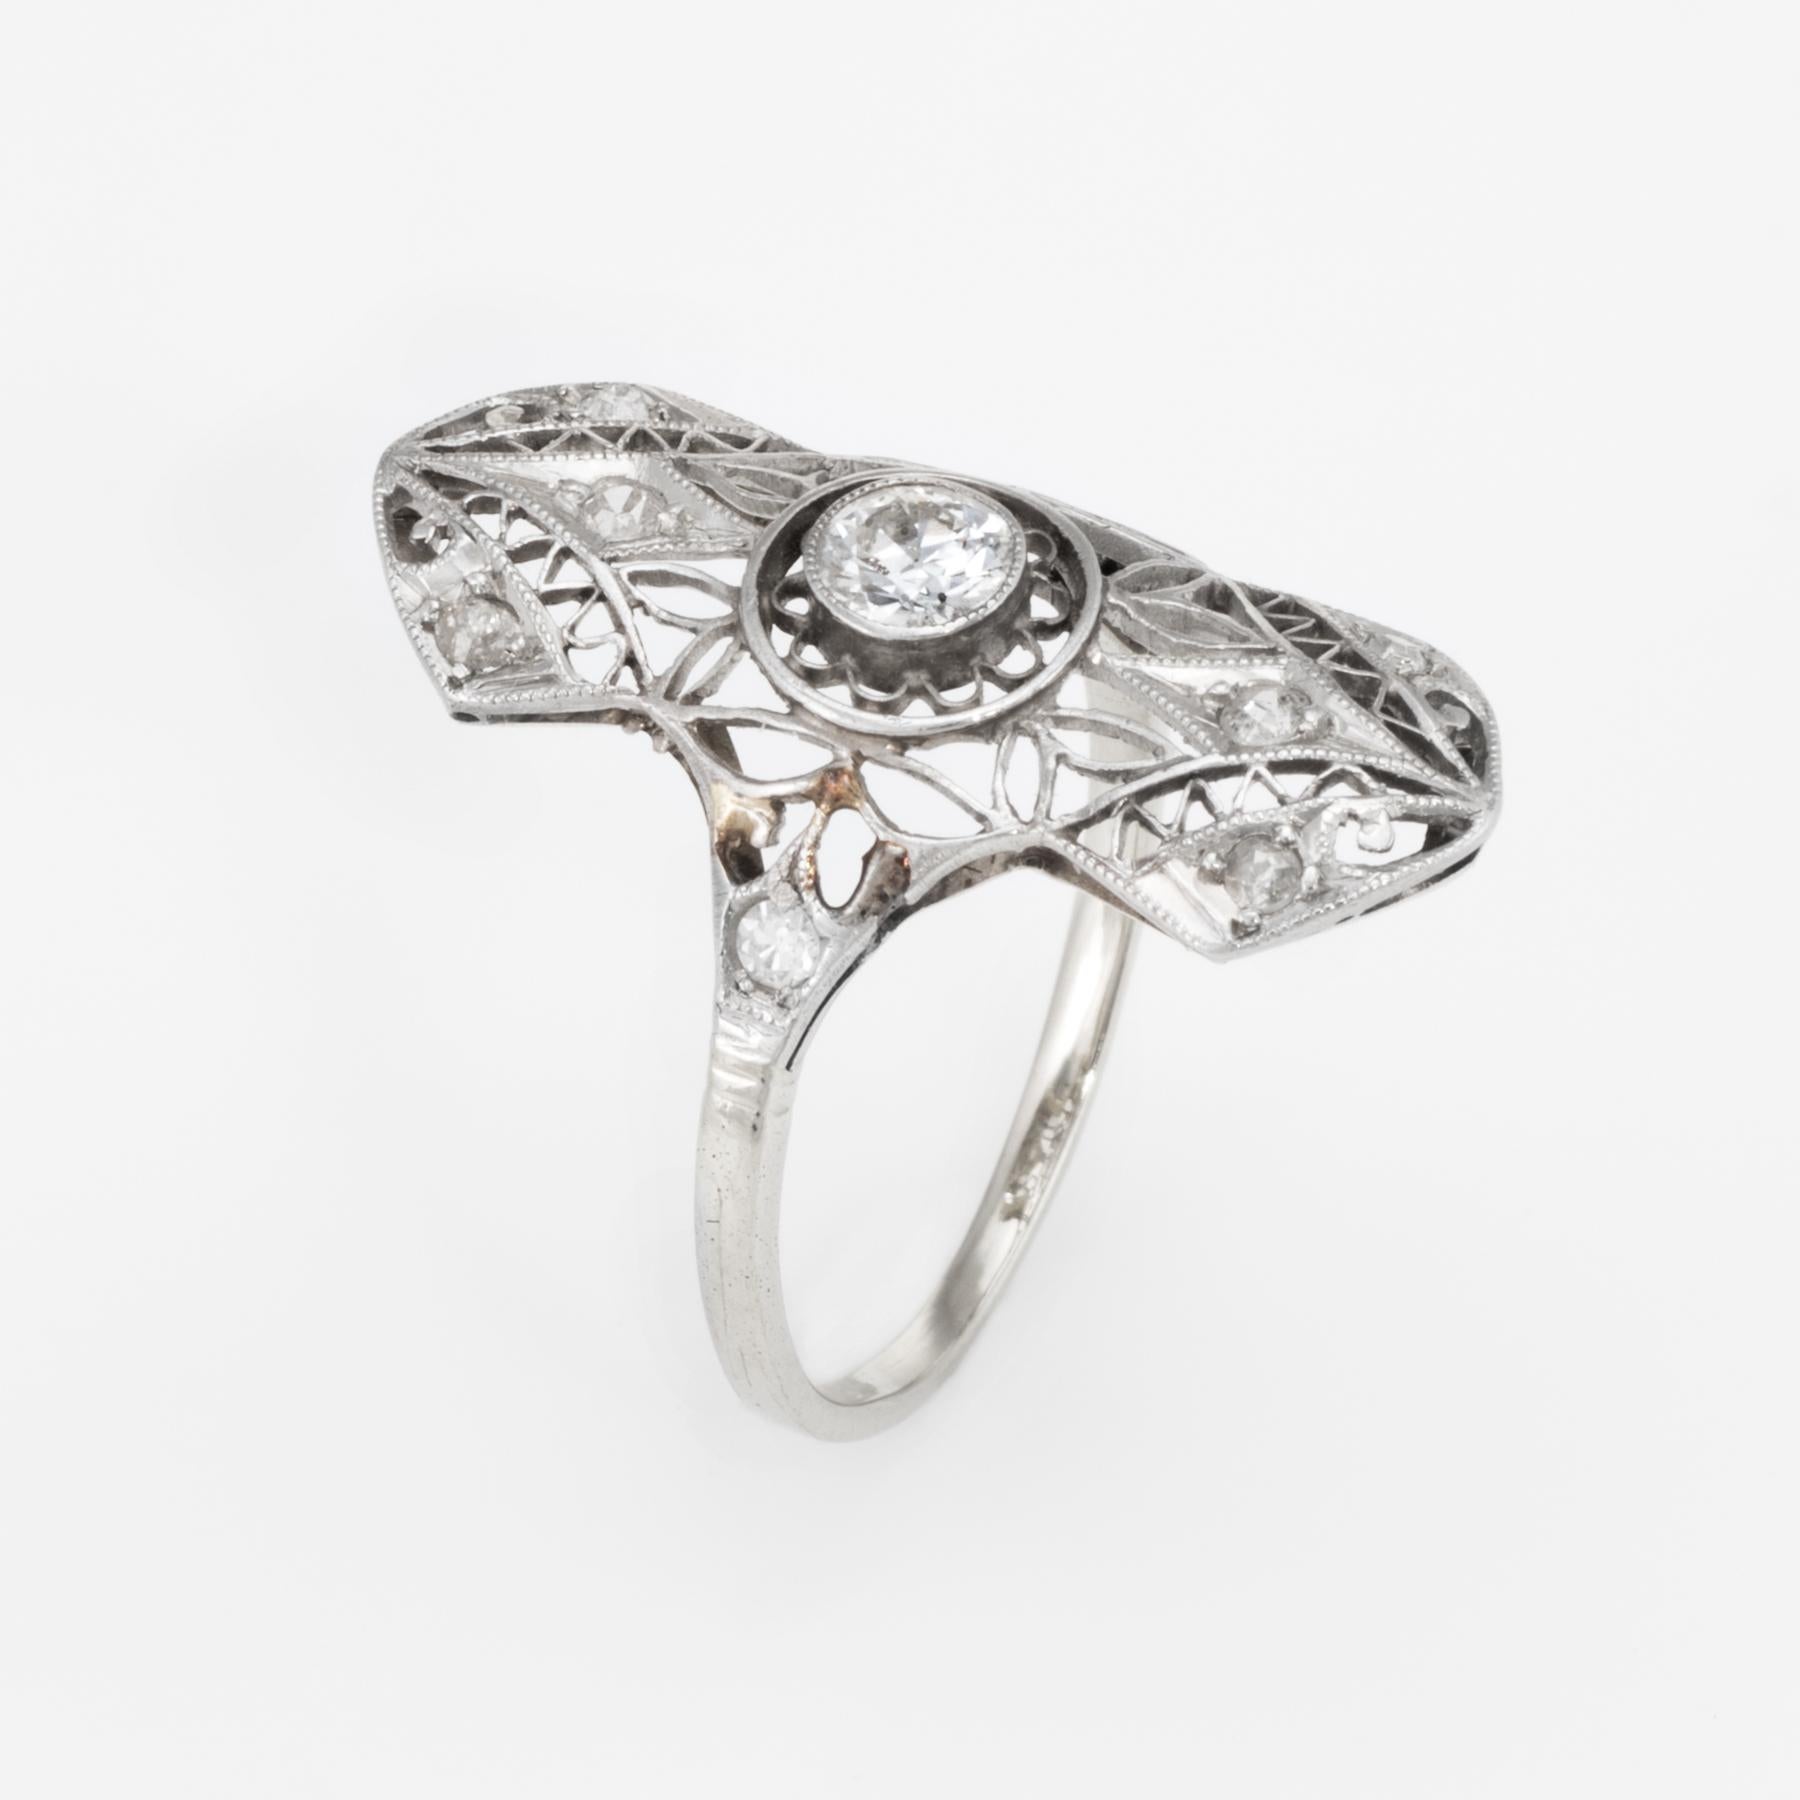 Fein detaillierter Ring aus der Art-Déco-Ära (ca. 1920er bis 1930er Jahre), gefertigt aus 14 Karat Weißgold. 

Ein zentral montierter Diamant von schätzungsweise 0,20 Karat im alten europäischen Schliff ist mit 8 Diamanten von schätzungsweise 0,02